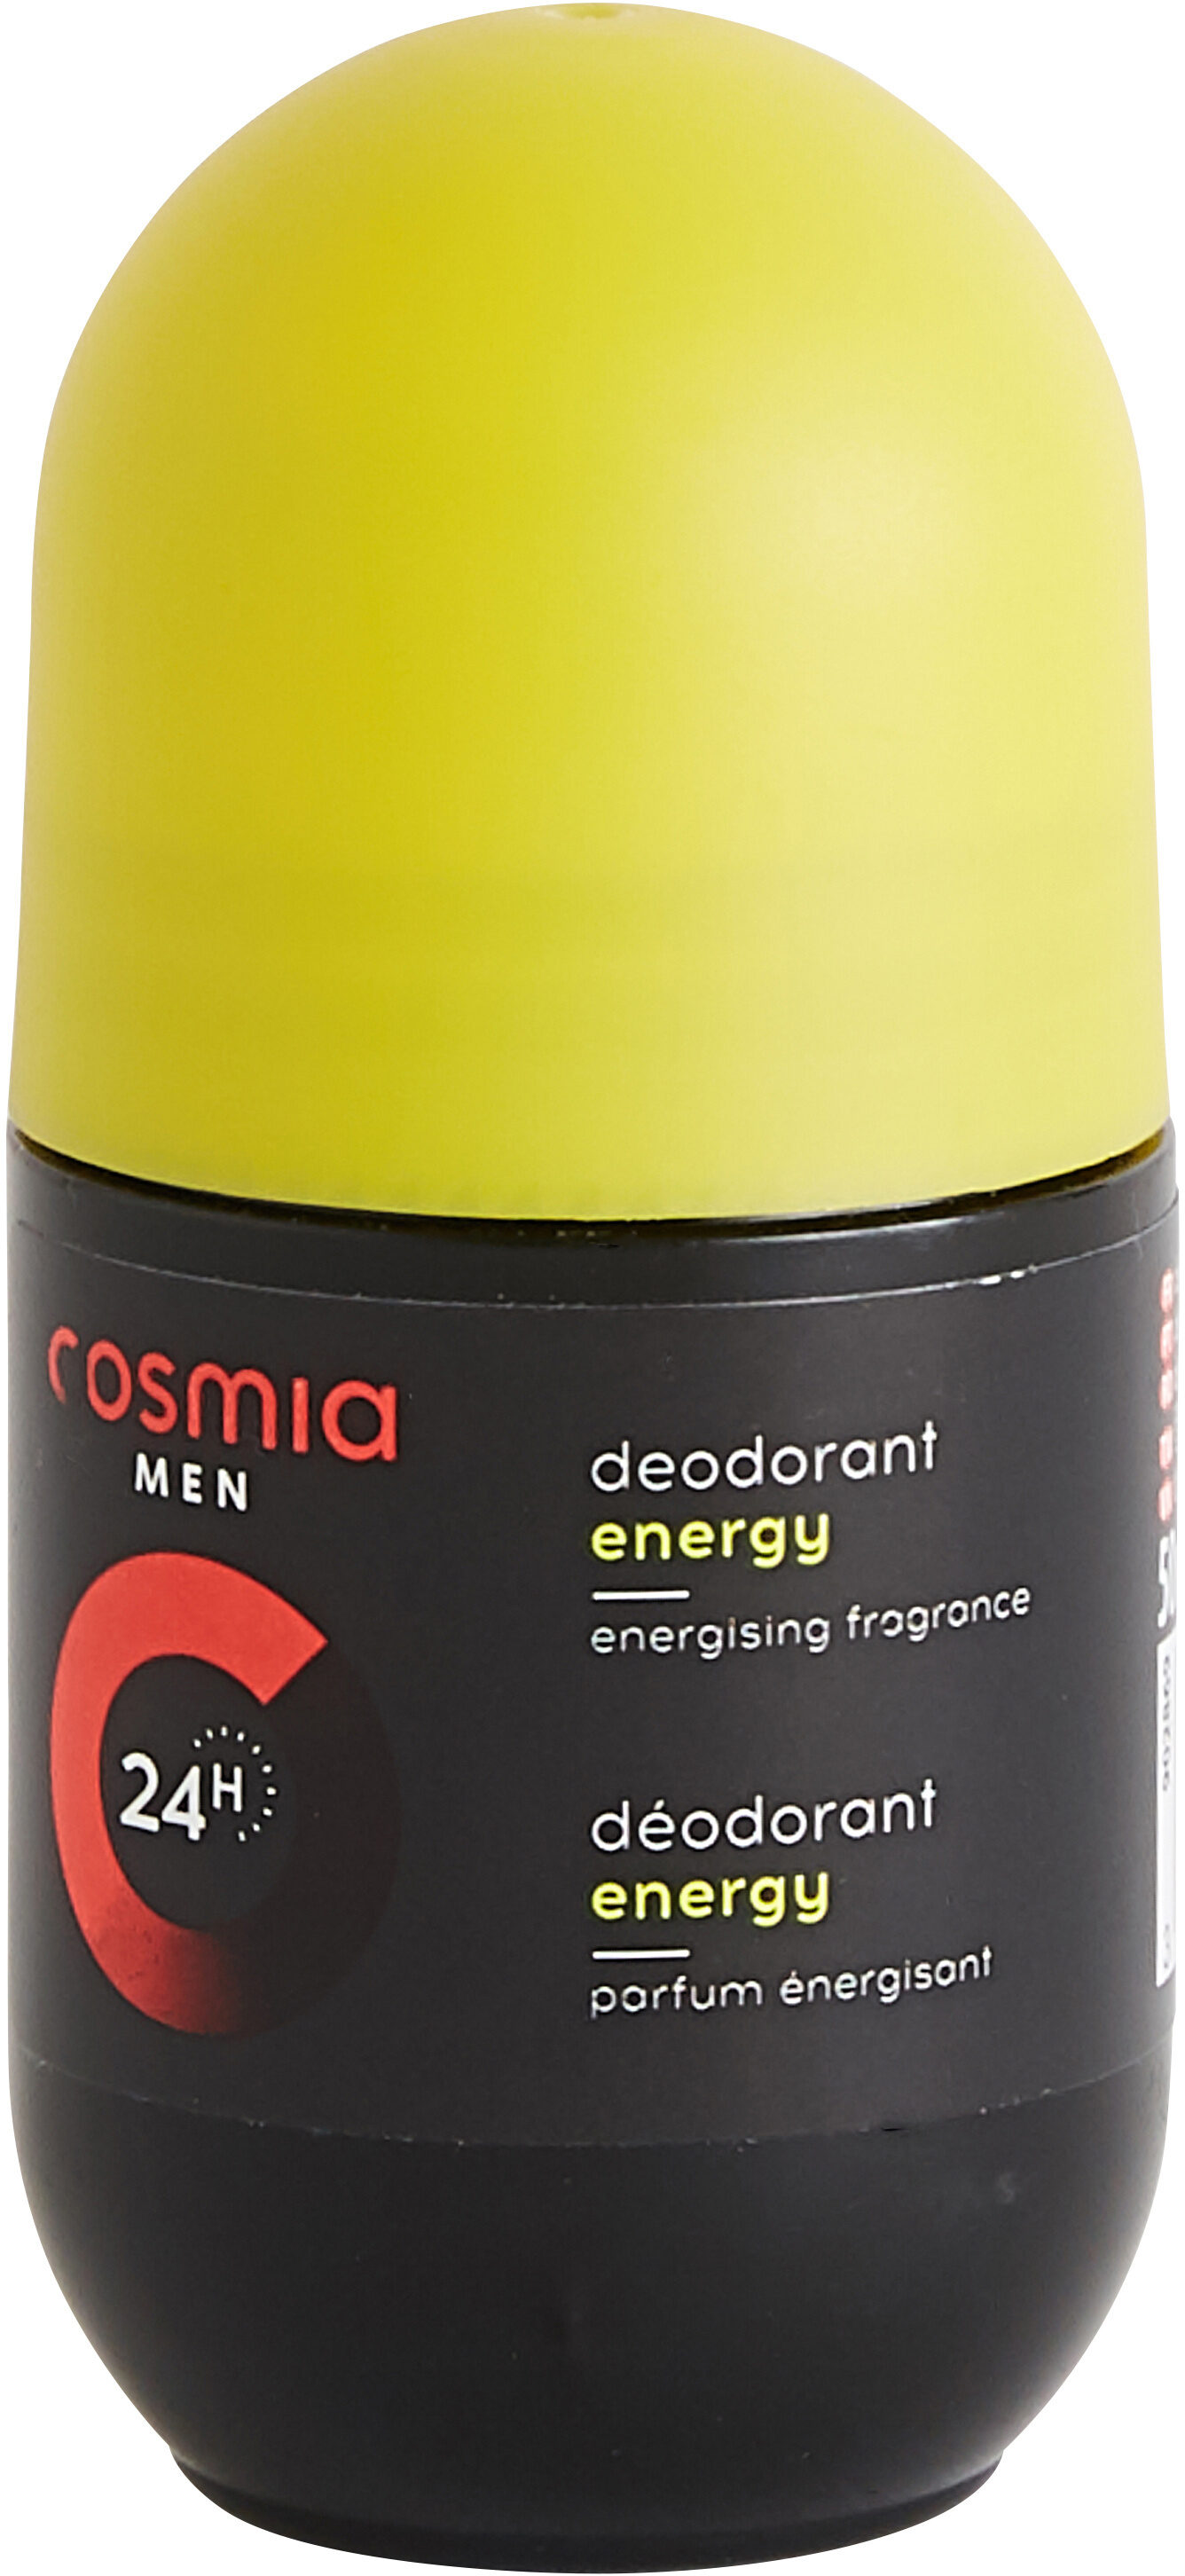 Déodorant Energy 24h - Product - en